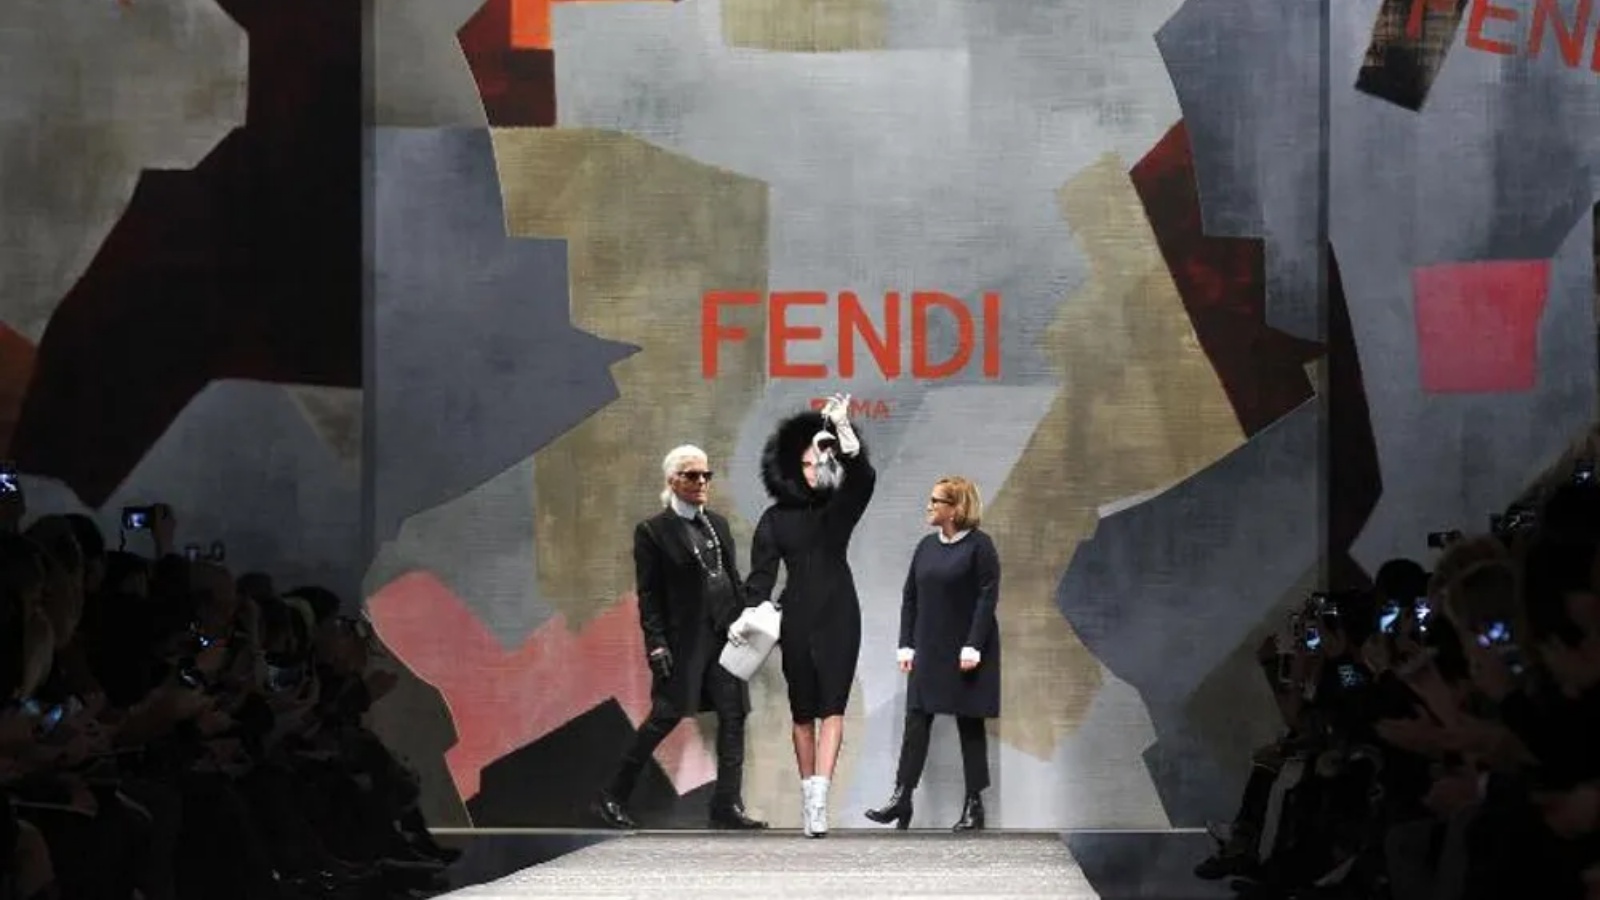 المصممان كارل لاغرفيلد (يسار) وسيلفيا فينتوريني فيندي (يمين) يحيون الجمهور في نهاية عرض مجموعة فندي، بطائرة بدون طيار فوق المنصة، في ميلانو